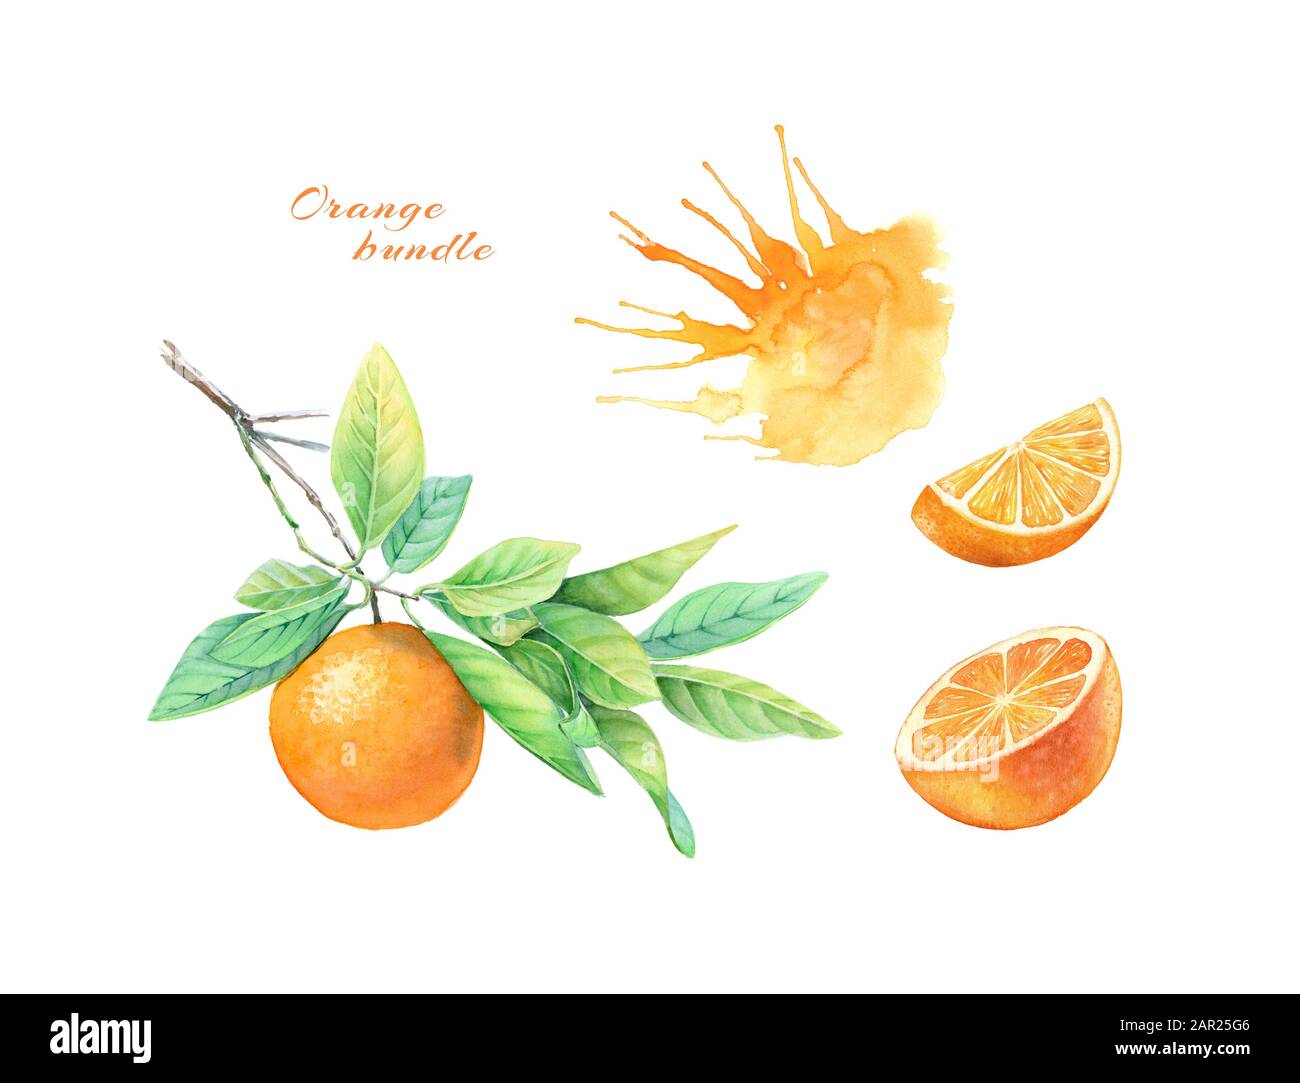 Orangefarbene Obstsammlung in Aquarell. Realistische botanische Illustration mit Zitrusfrüchten, Saft und Ast. Handgezeichnete exotische Lebensmittel auf weißem Etikett Stockfoto